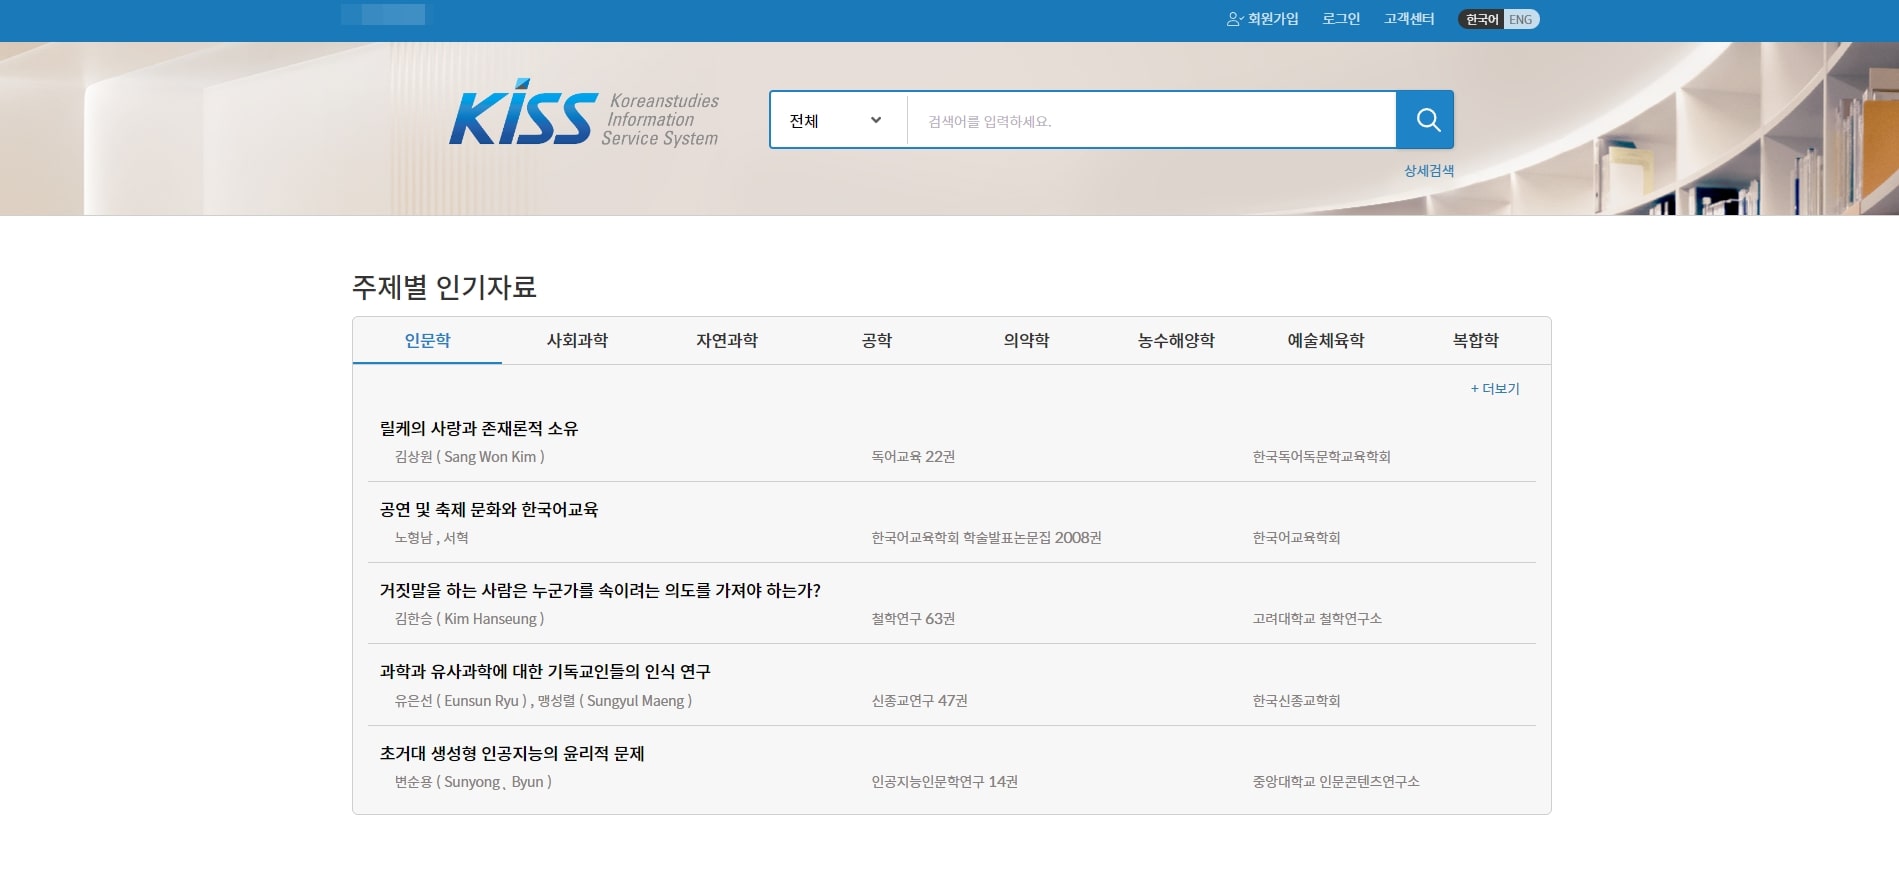 국내 논문 검색 사이트 KISS 홈페이지 메인화면